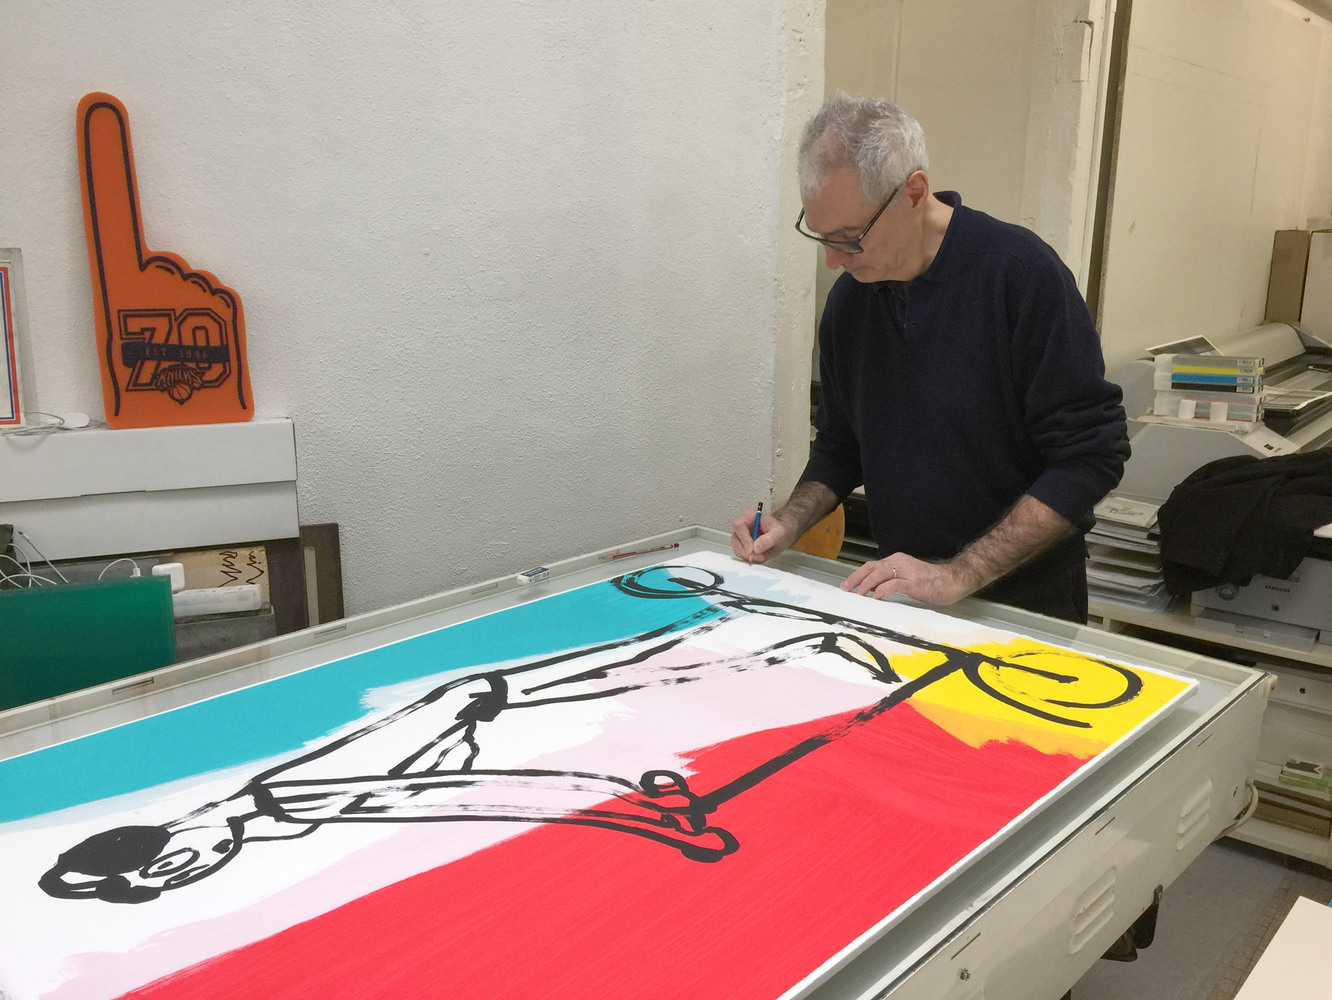 Alain SECHAS - Trottinette, 2018 -  Le 12 avril 2018, Alain Séchas est à l'atelier de Jérôme Arcay pour signer la sérigraphie